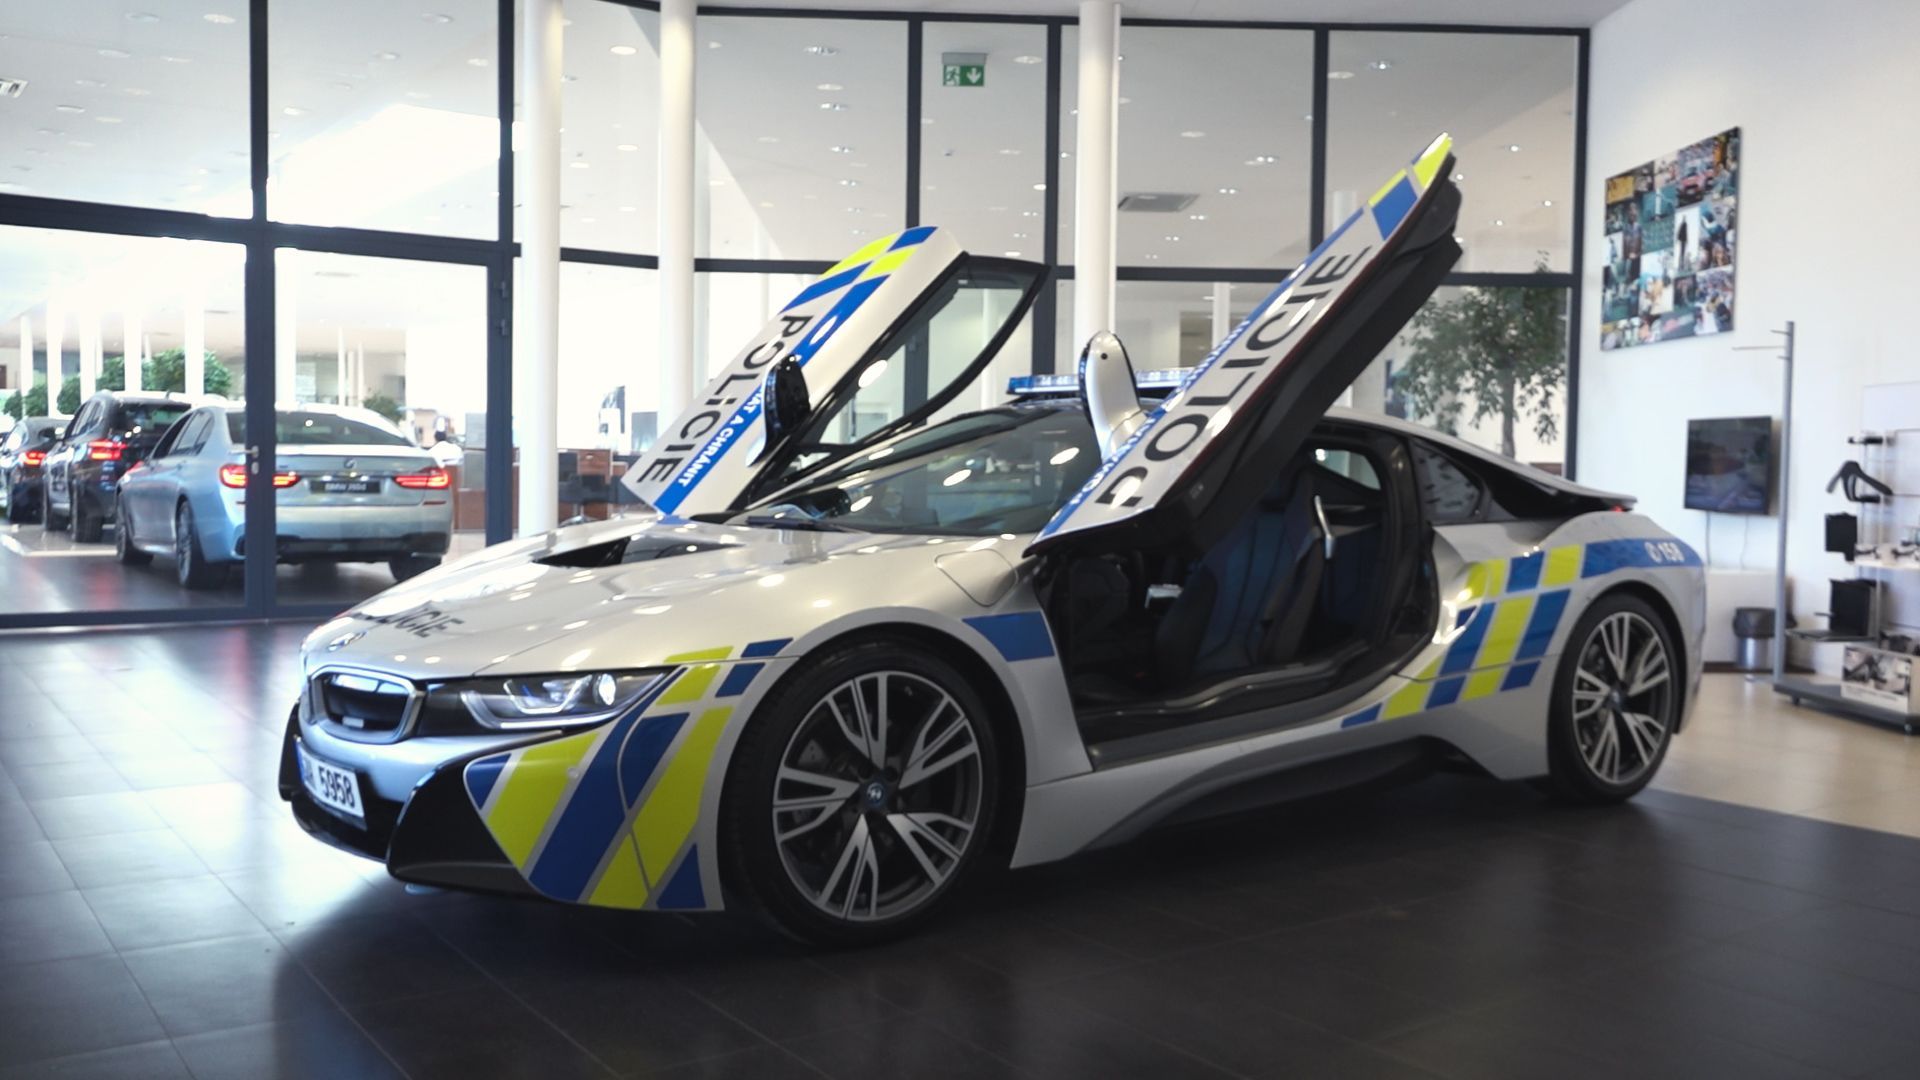 Policejní BMW i8, 2018